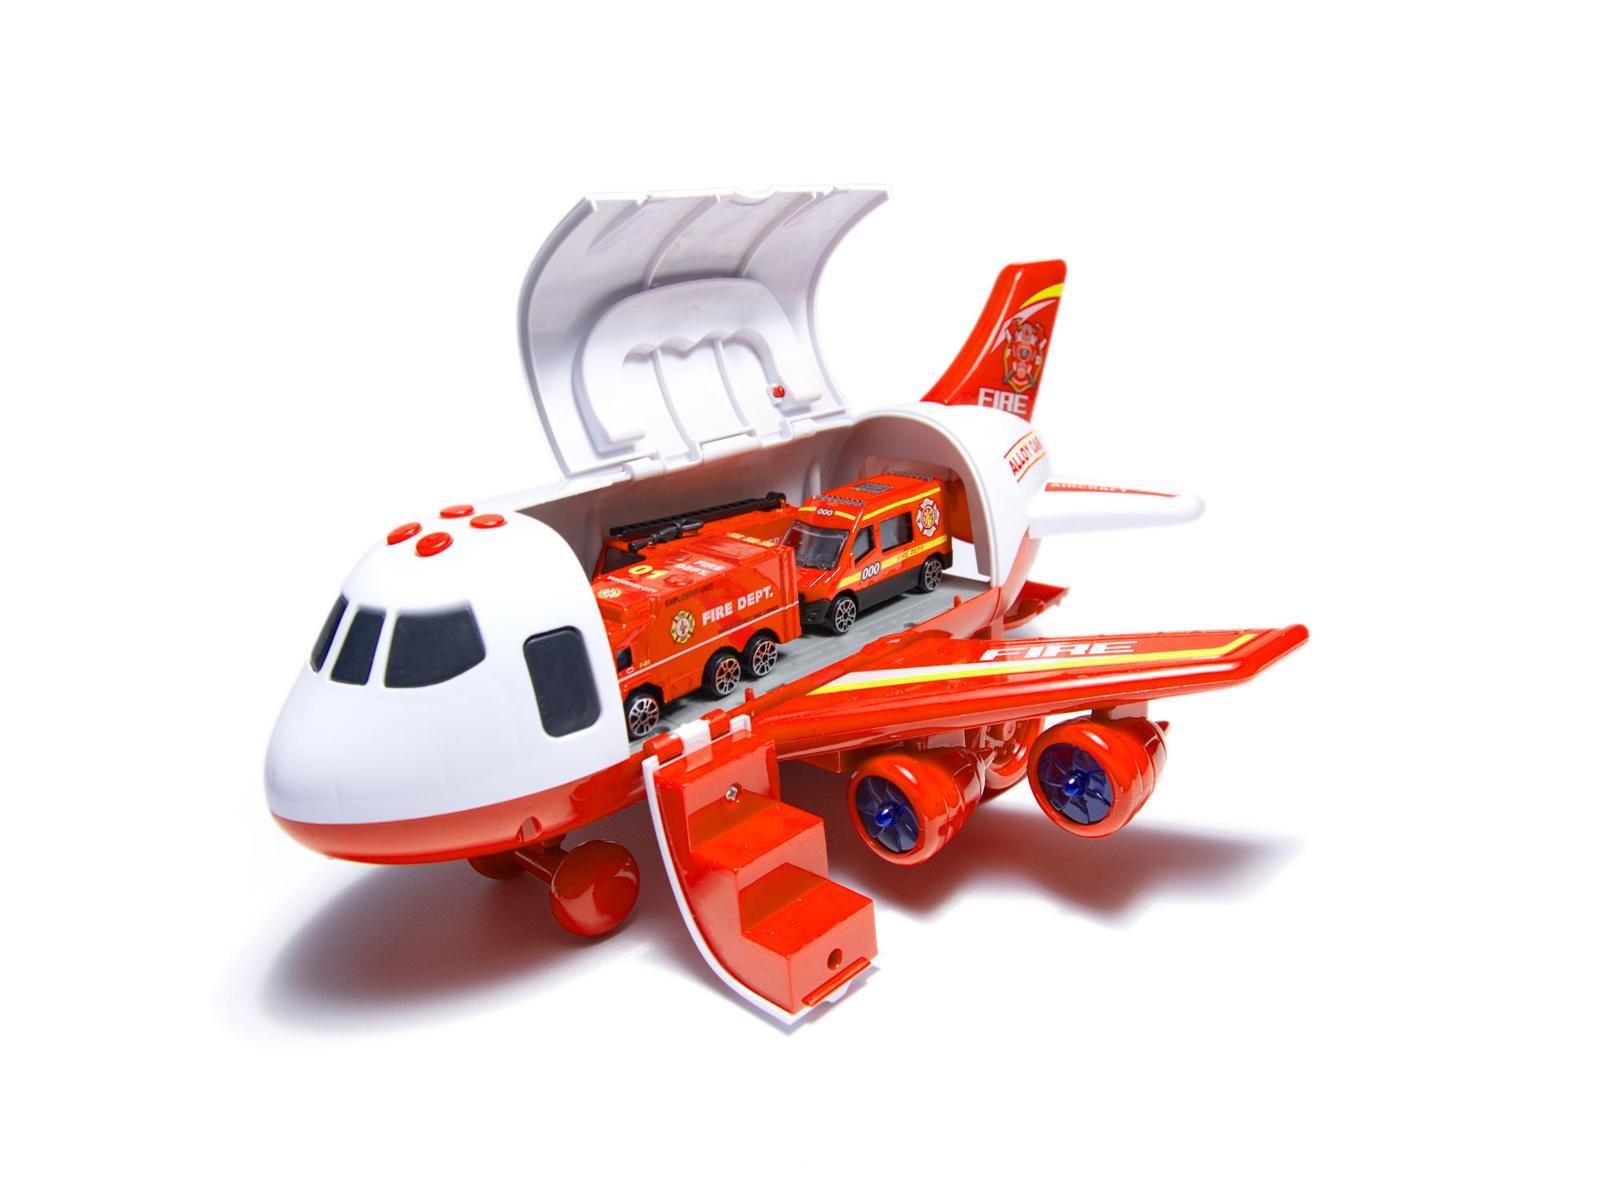 Transporter samolot + 3 pojazdy straż pożarna zabawka dla dzieci czerwona 41,5x31,5x14 cm nr. 15